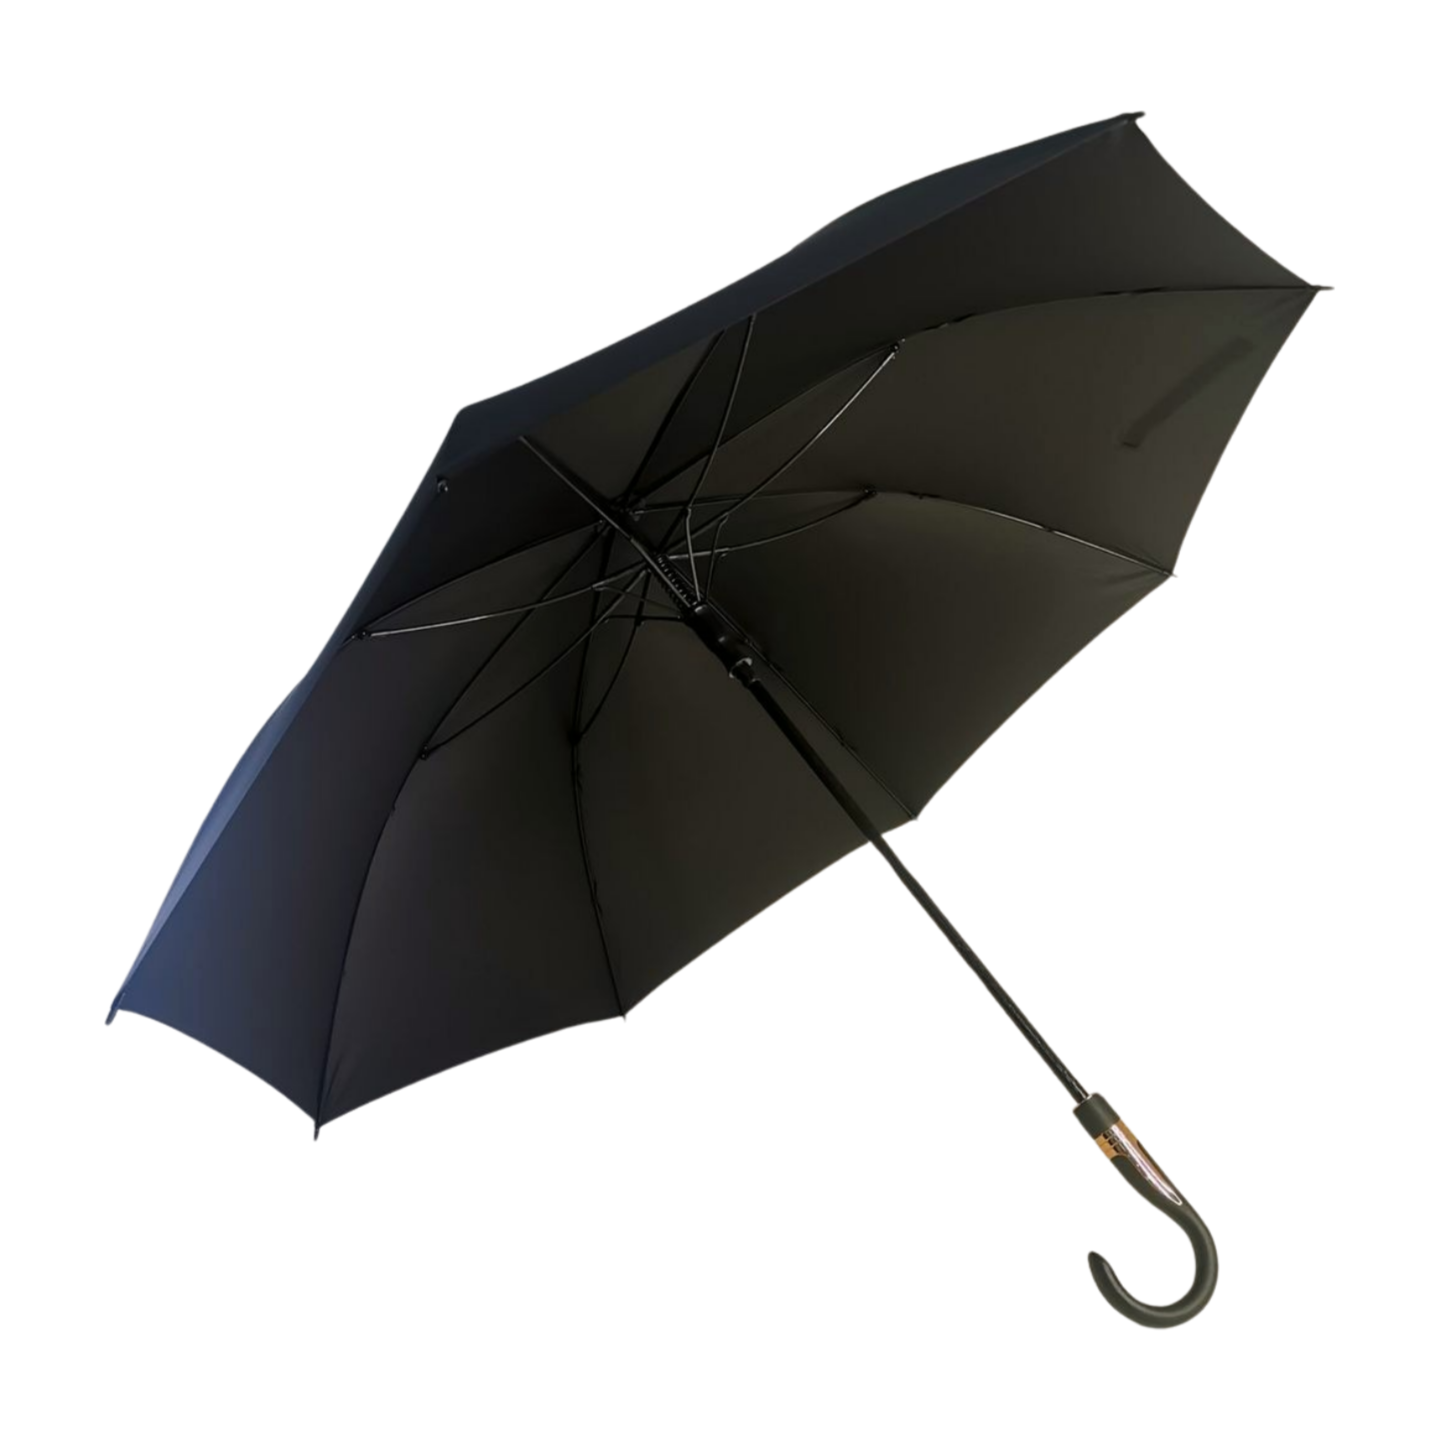 ttps://k913.goodao.net/60-golf-umbrel…business-style-product/